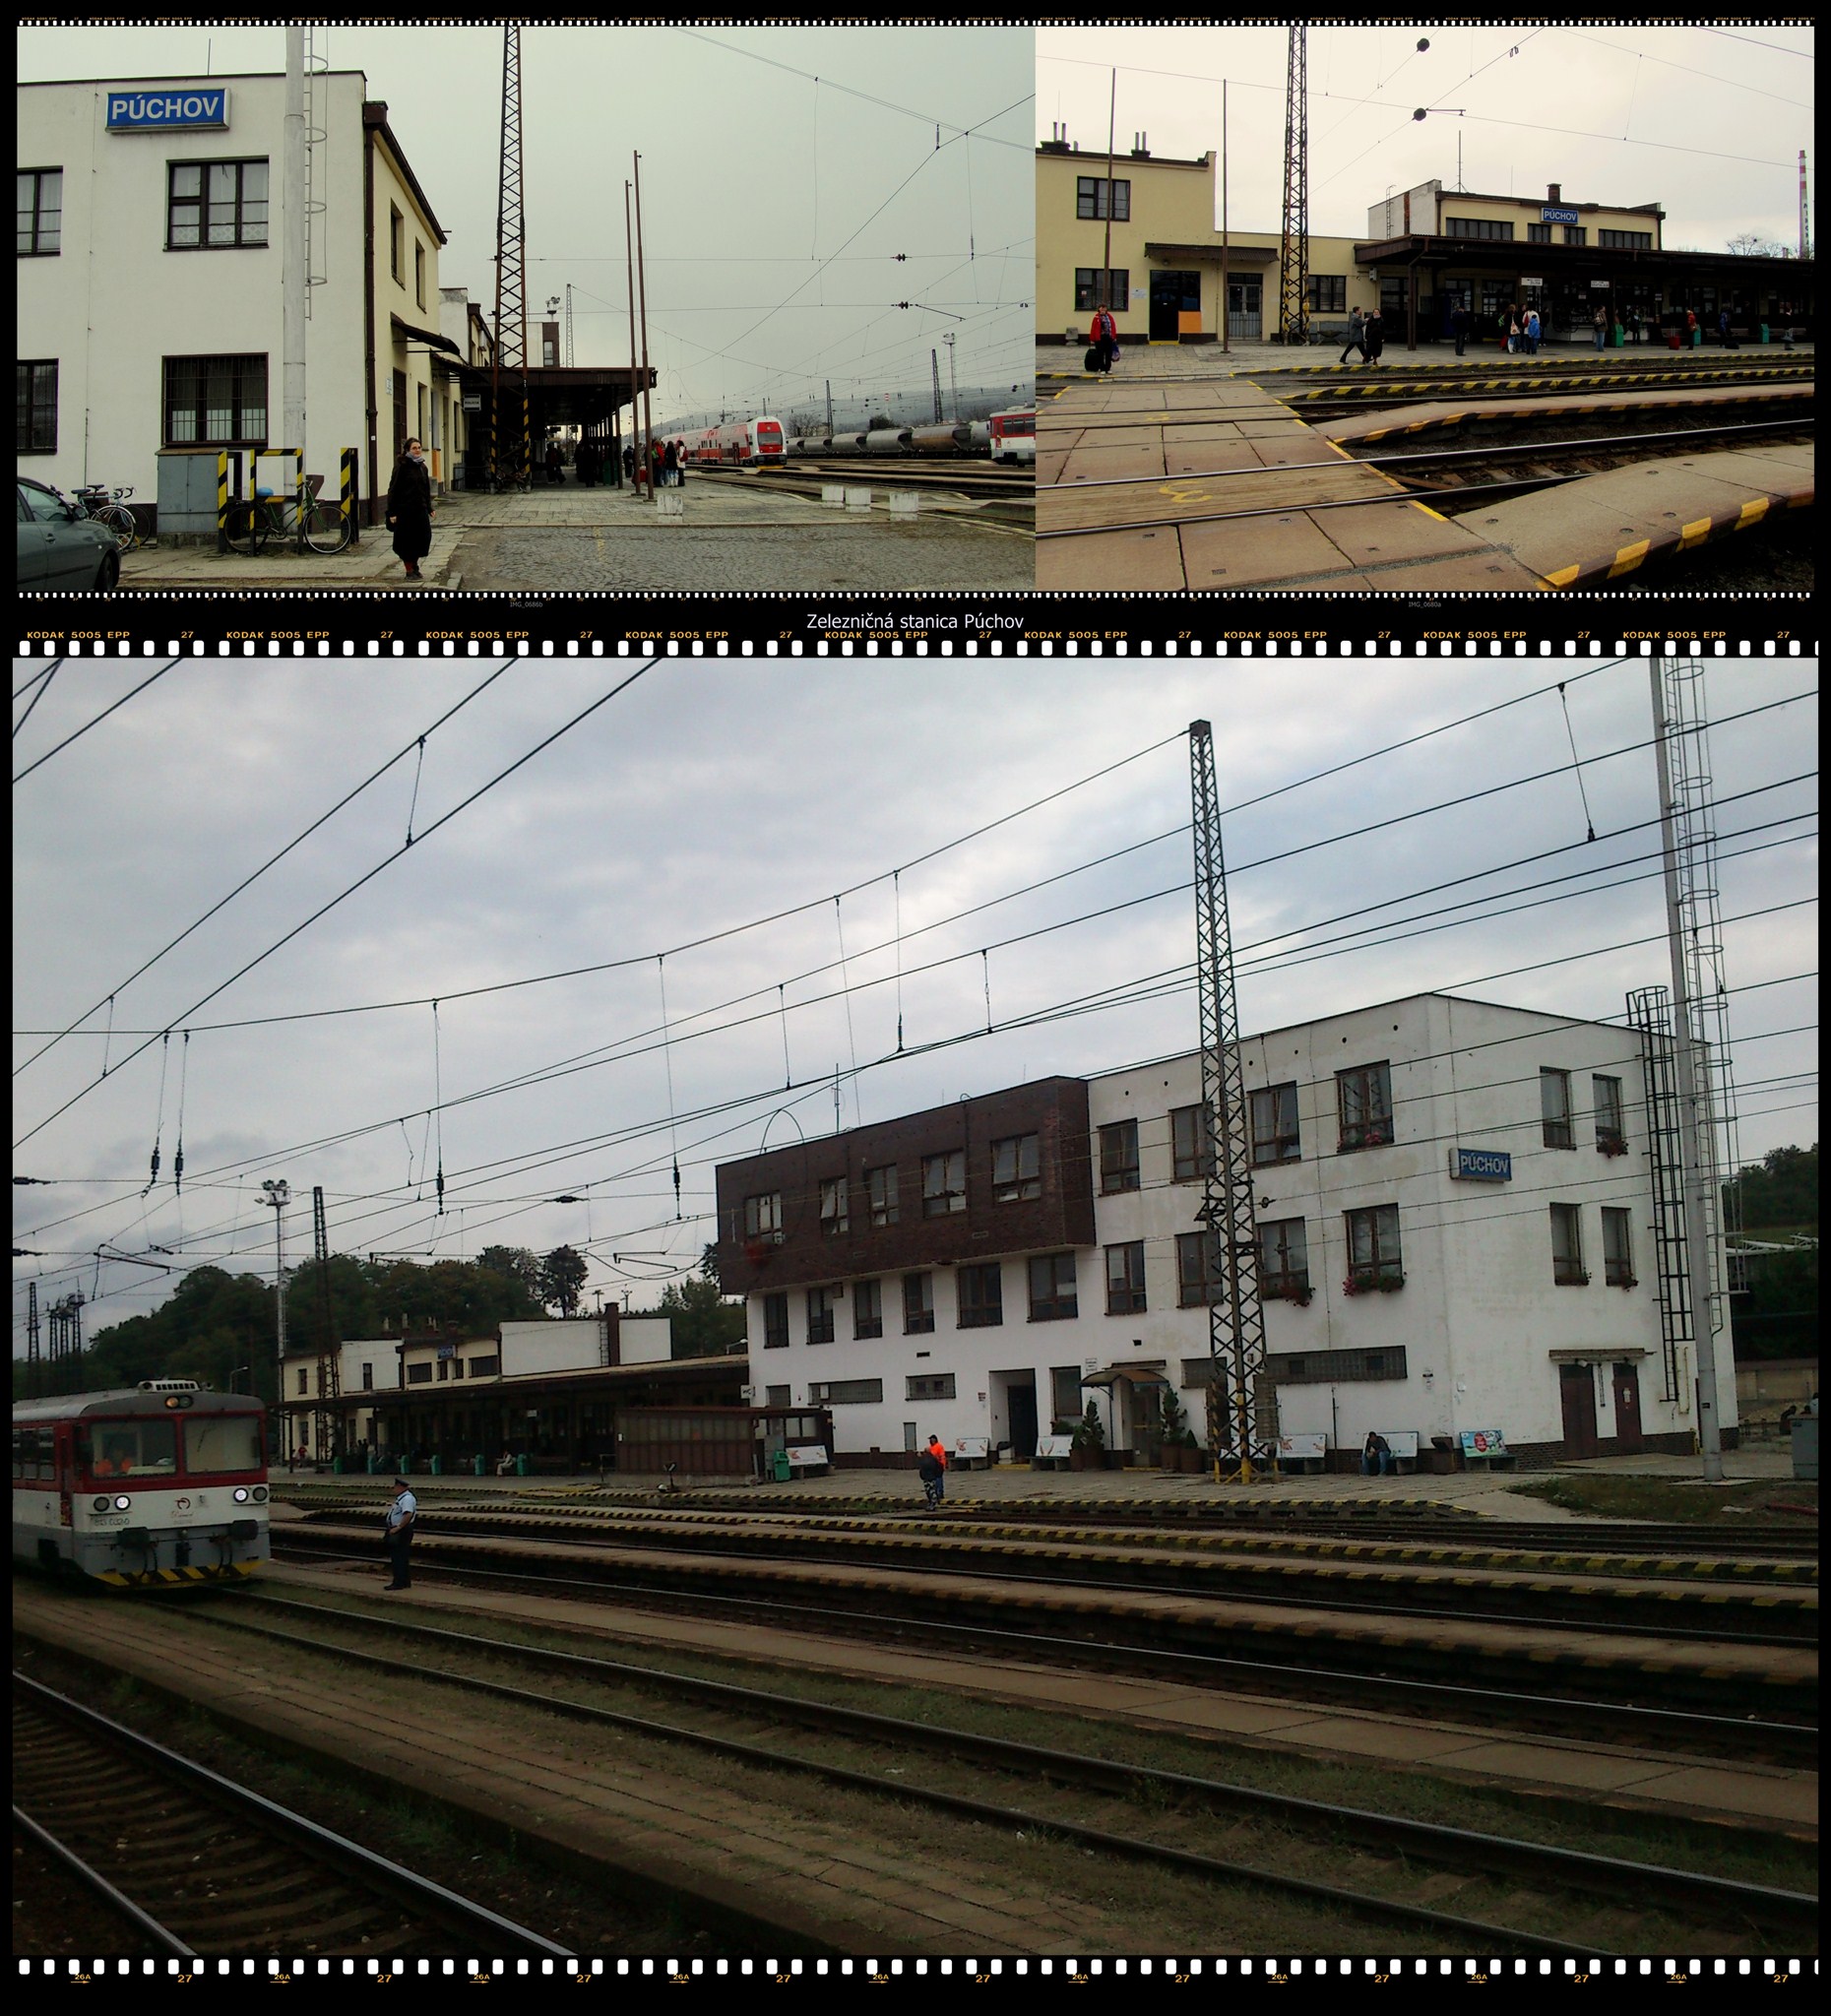 Zeleznicna stanica Puchov